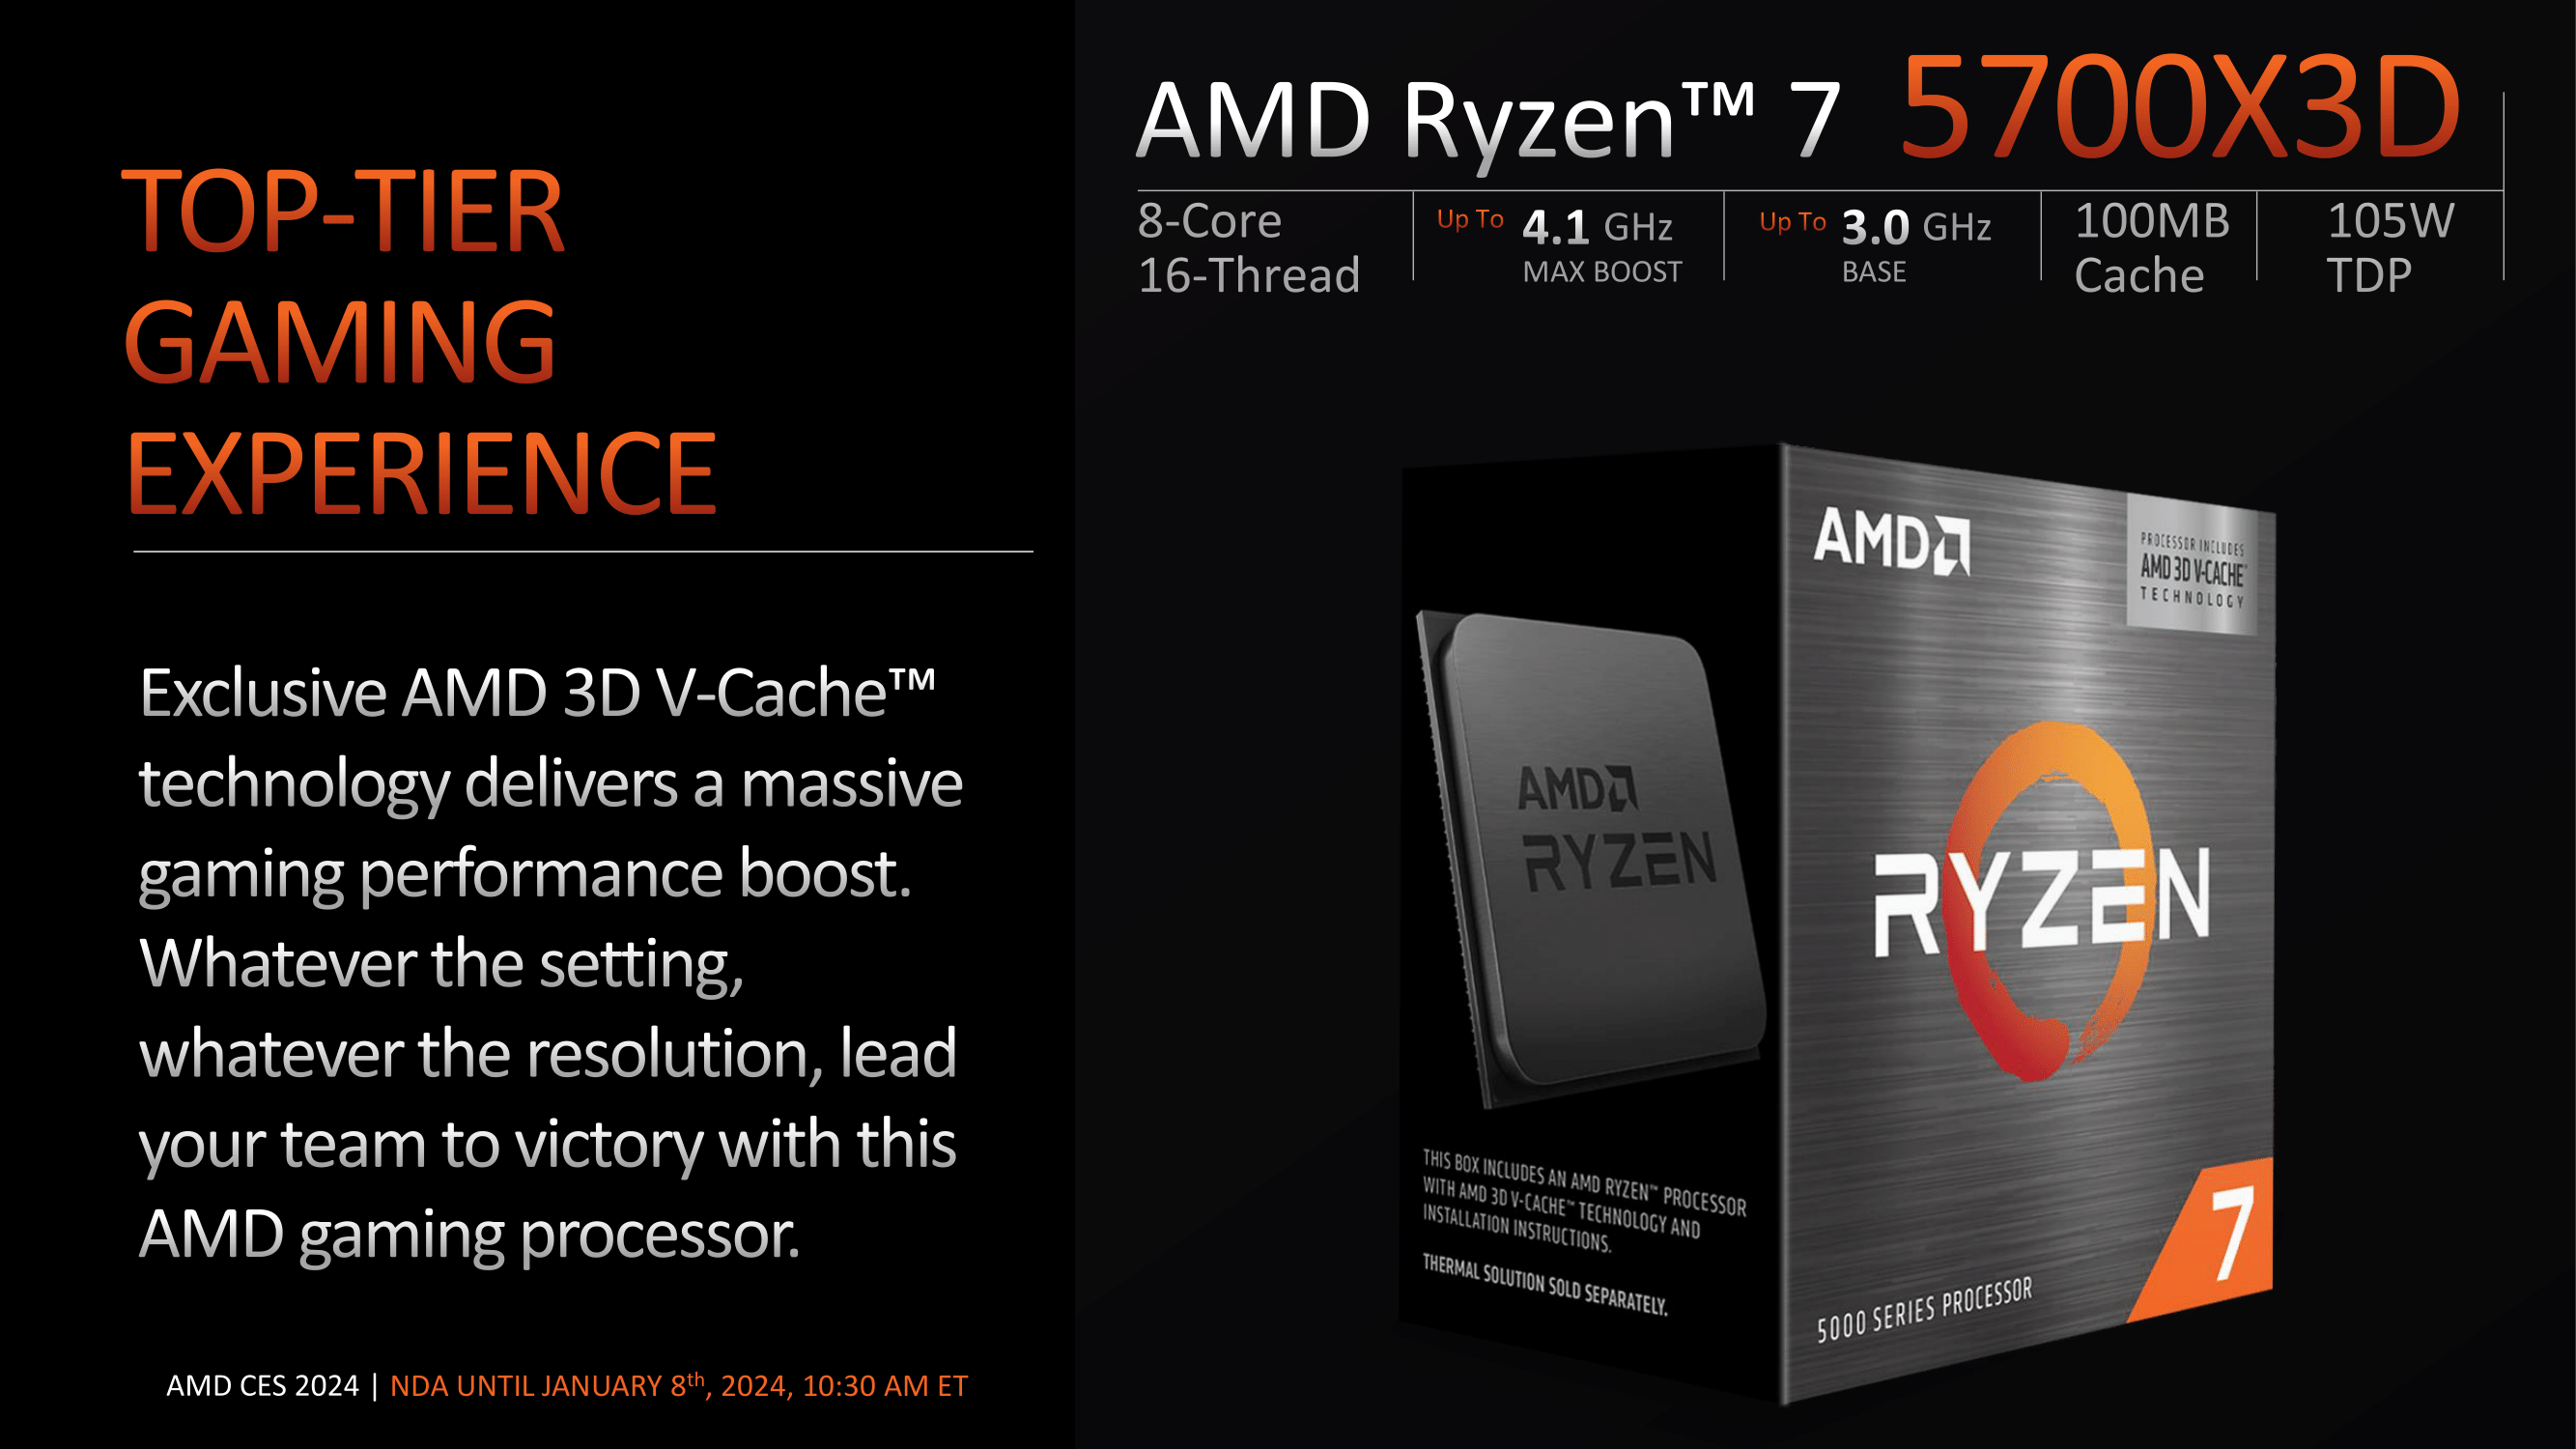 AMD Ryzen 7 5700X3D vs AMD Ryzen 5 7600 - Worthy upgrade? - PC Guide